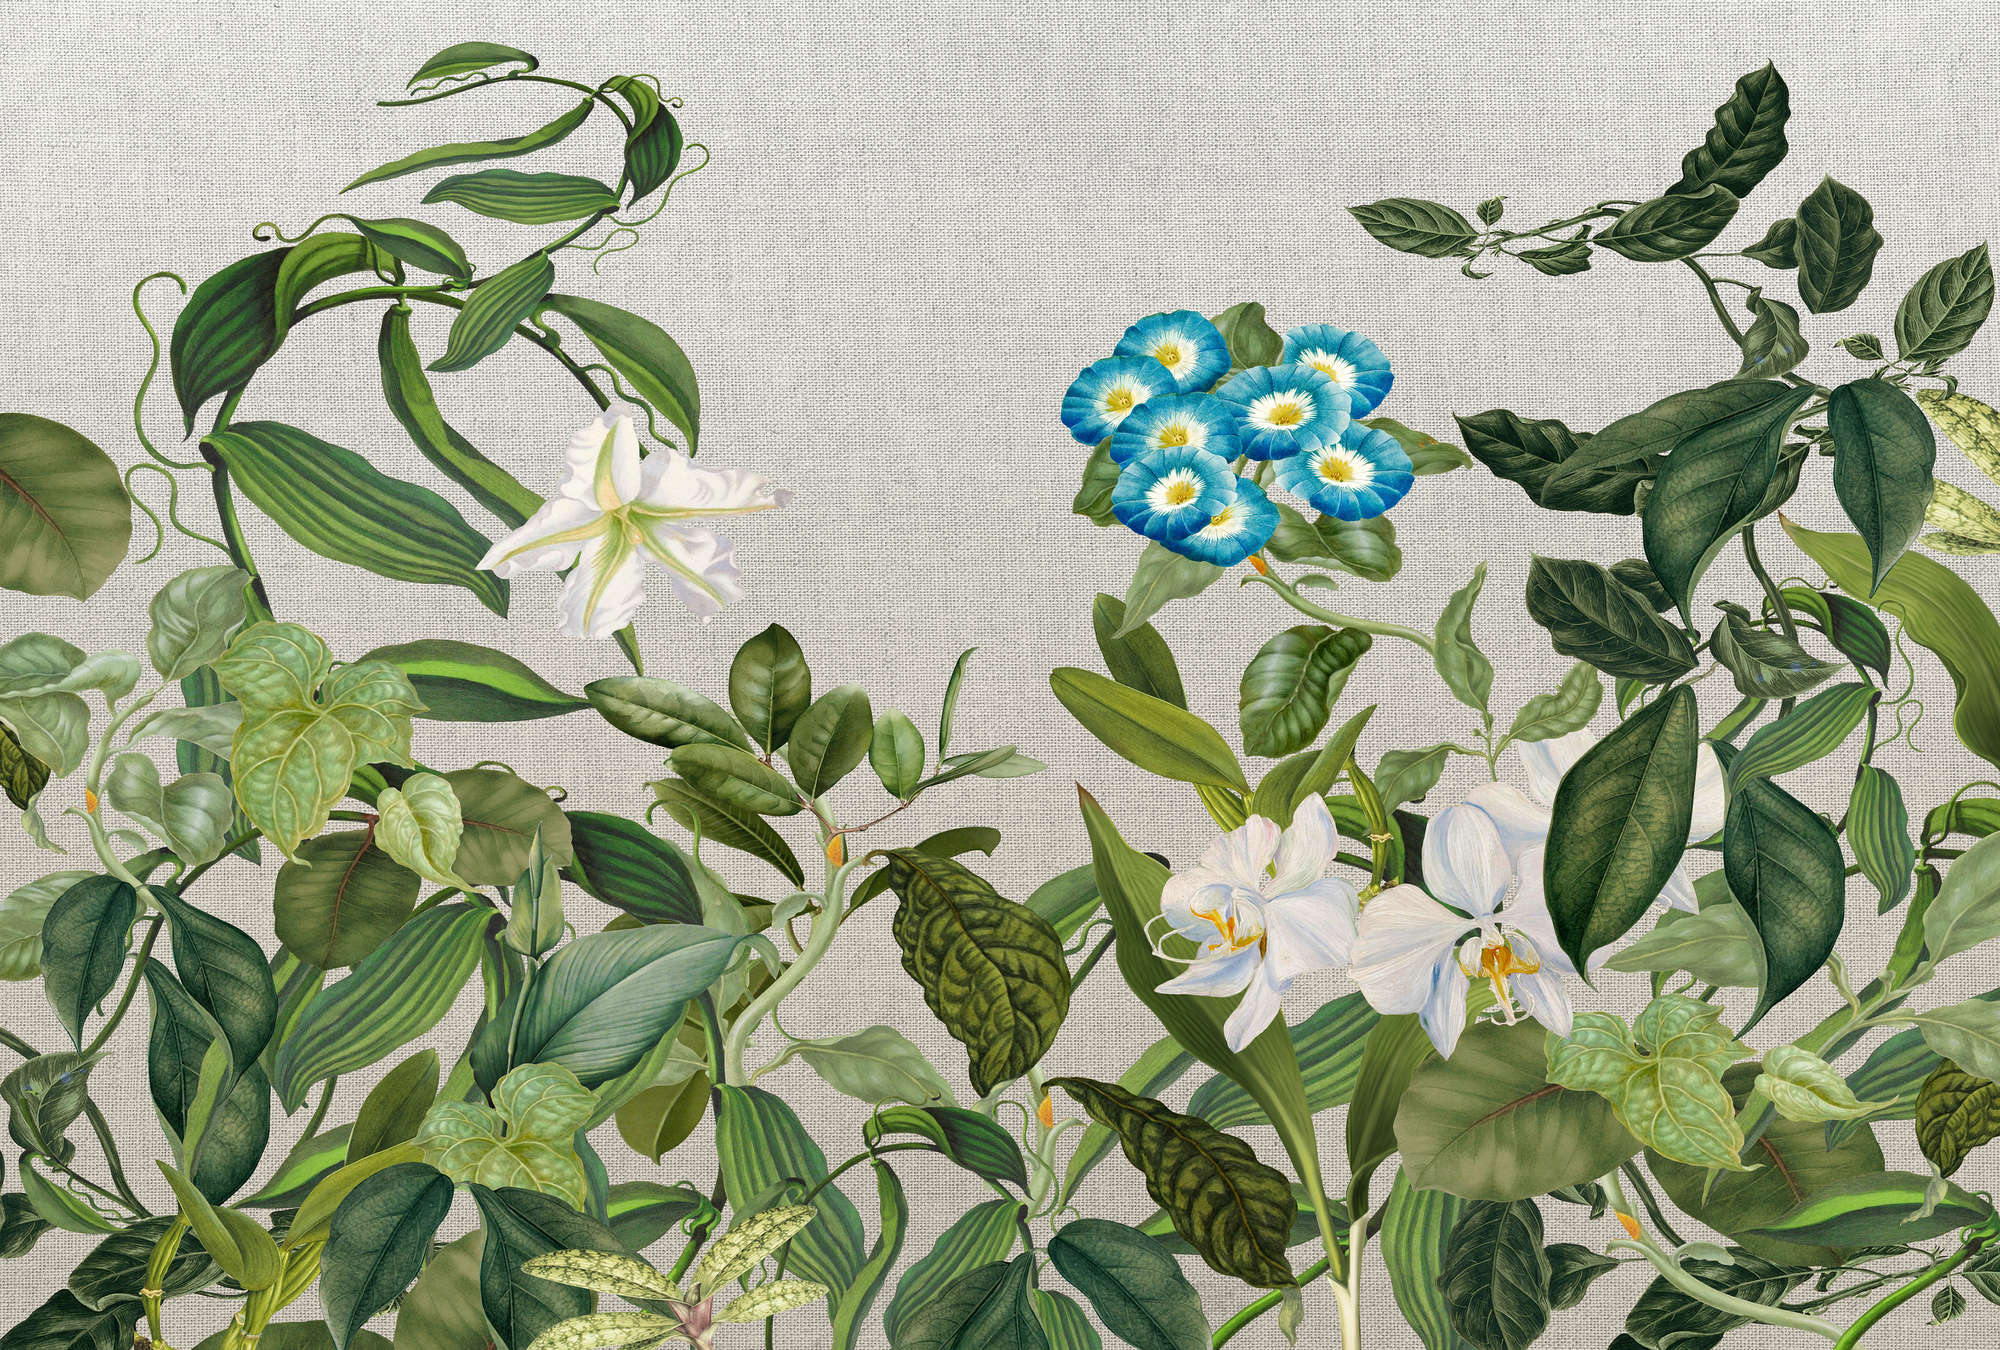             Mural de pared con flores, hojas y aspecto textil - verde, gris, azul
        